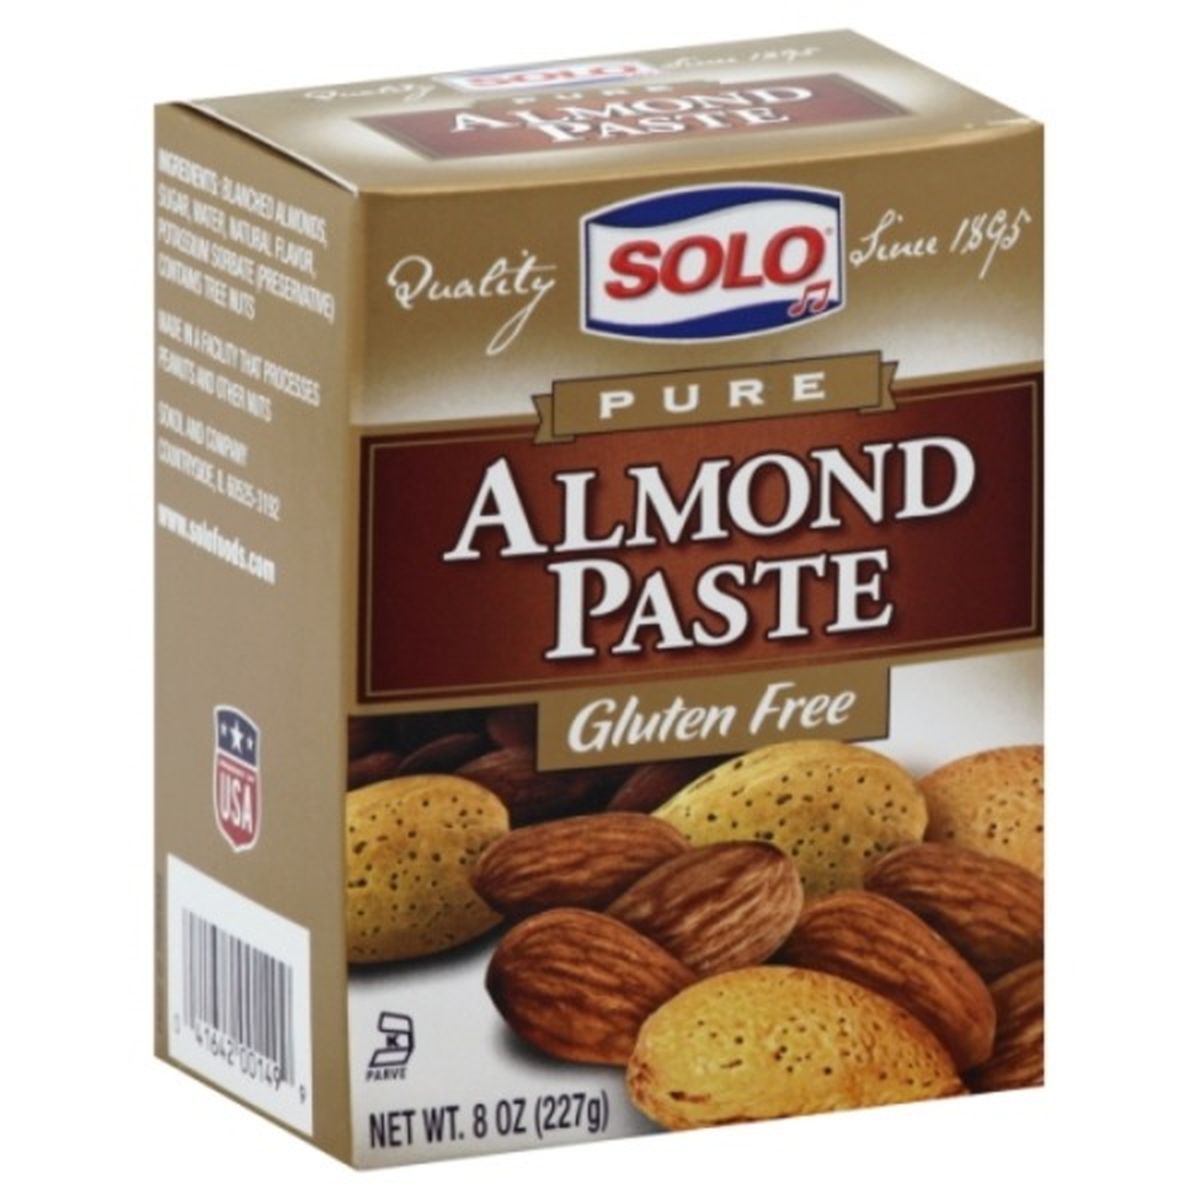 Calories in Solo Almond Paste, Pure